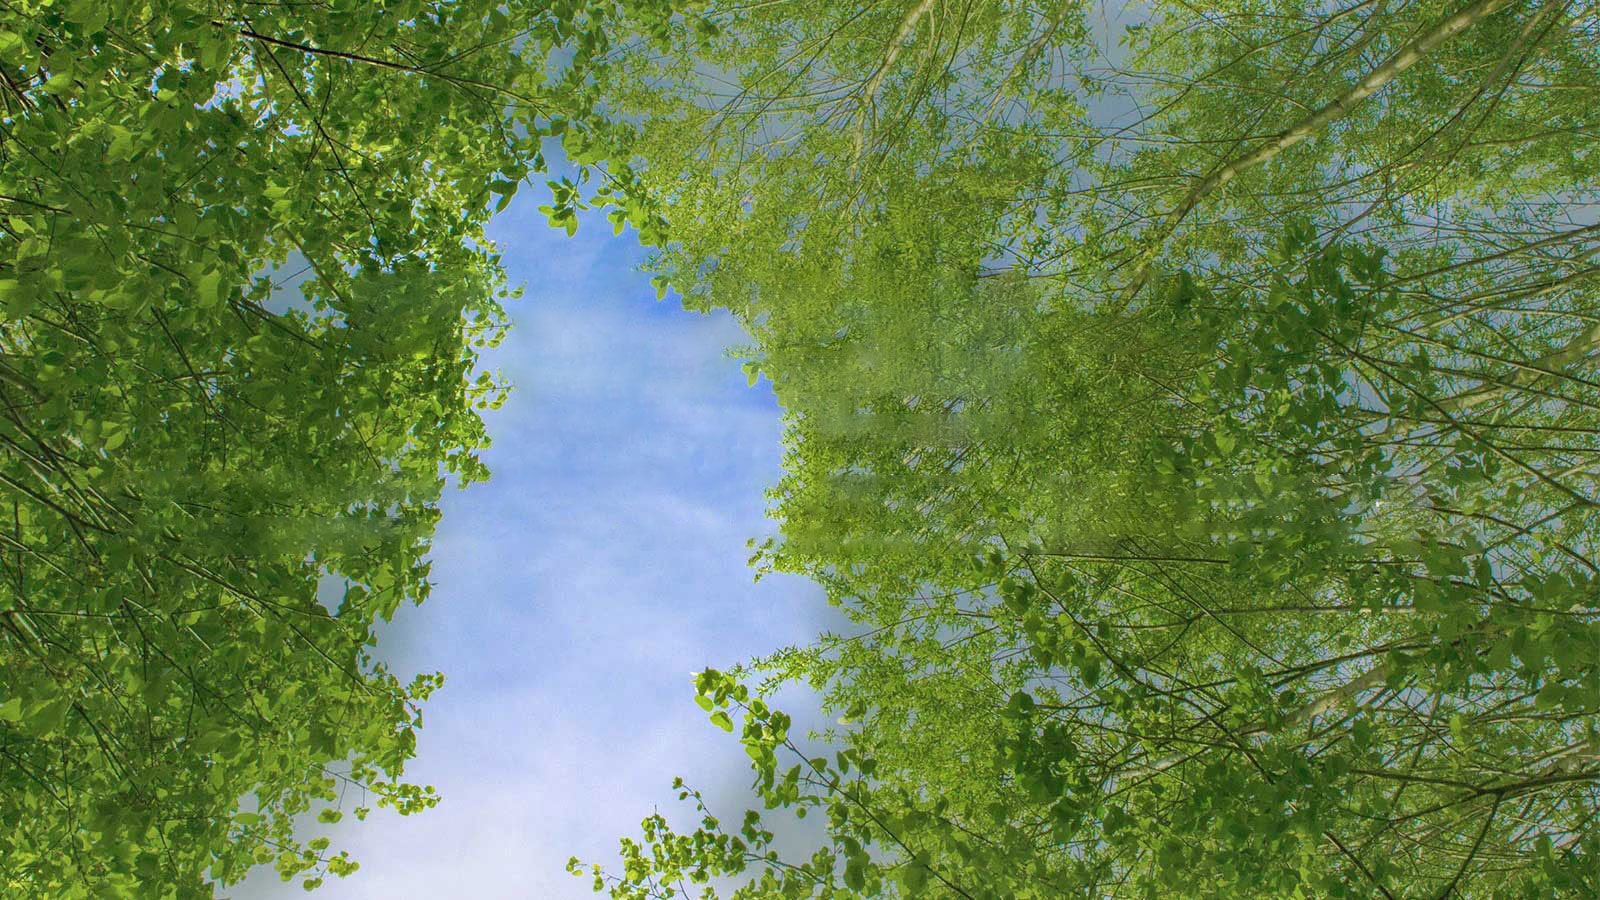 Zelený snímek plný bohatě olistěných stromů, mezi nimiž je obloha